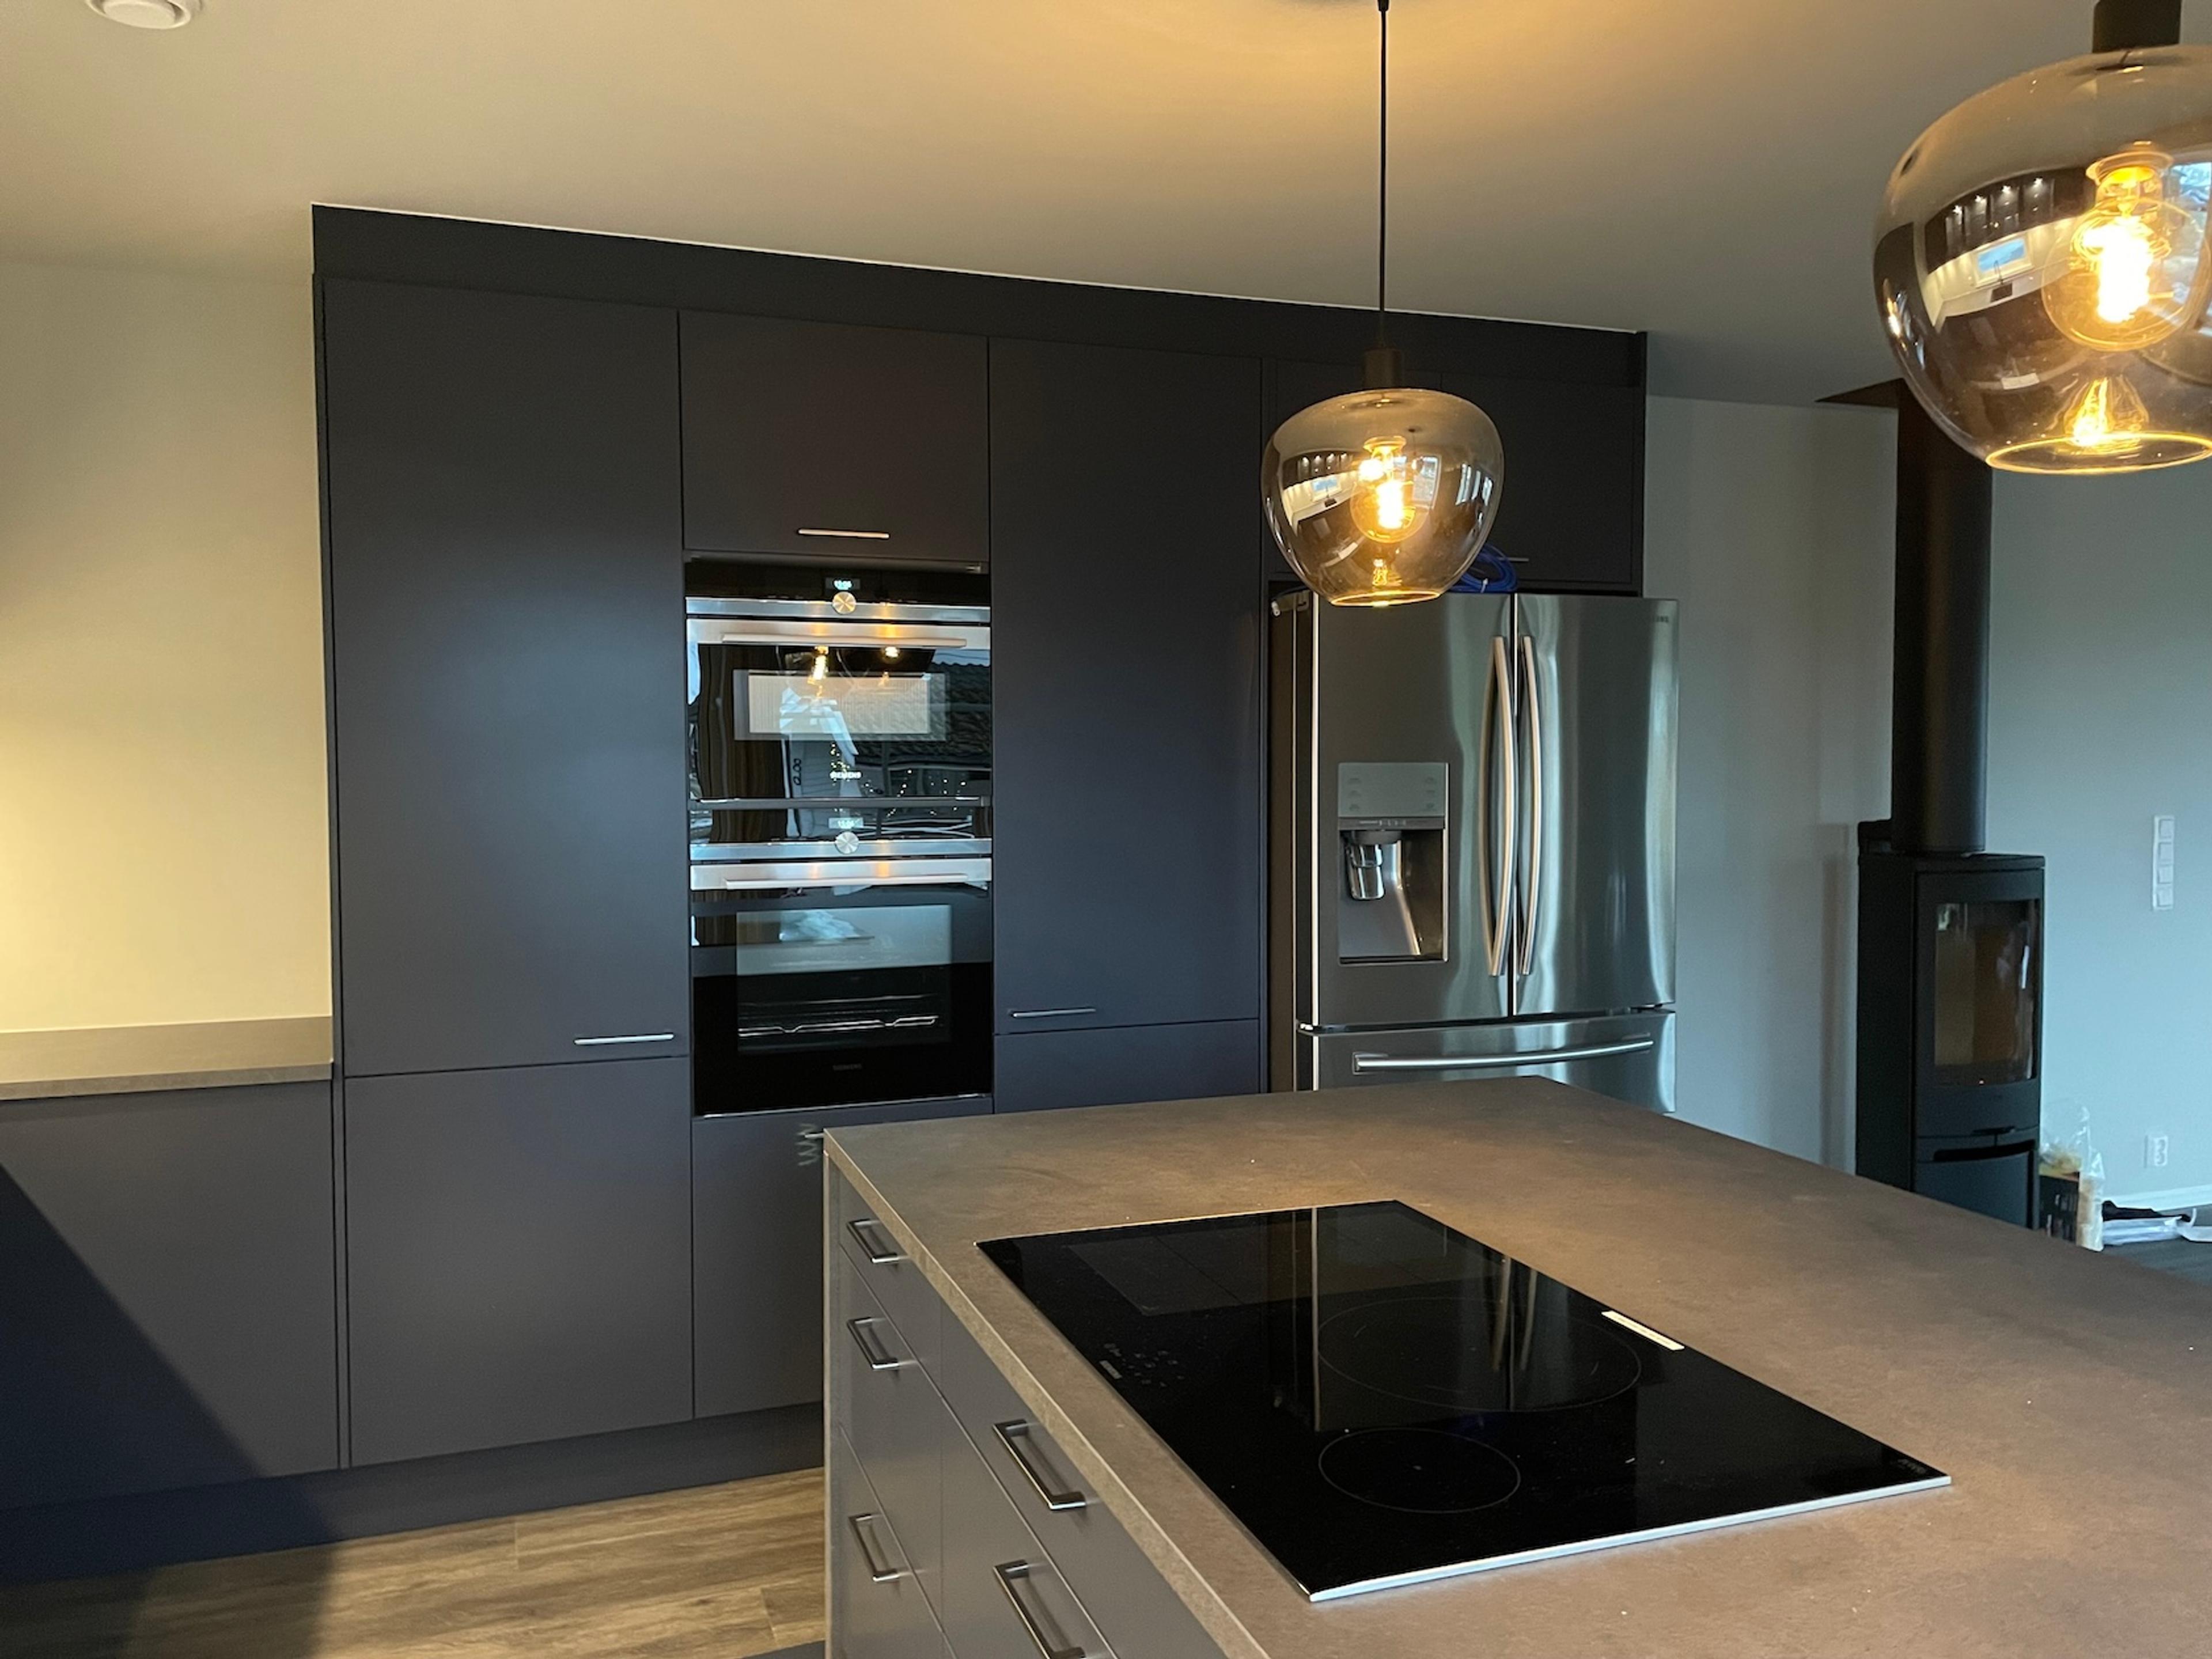 Moderne sort kjøkken med kjøkkenøy